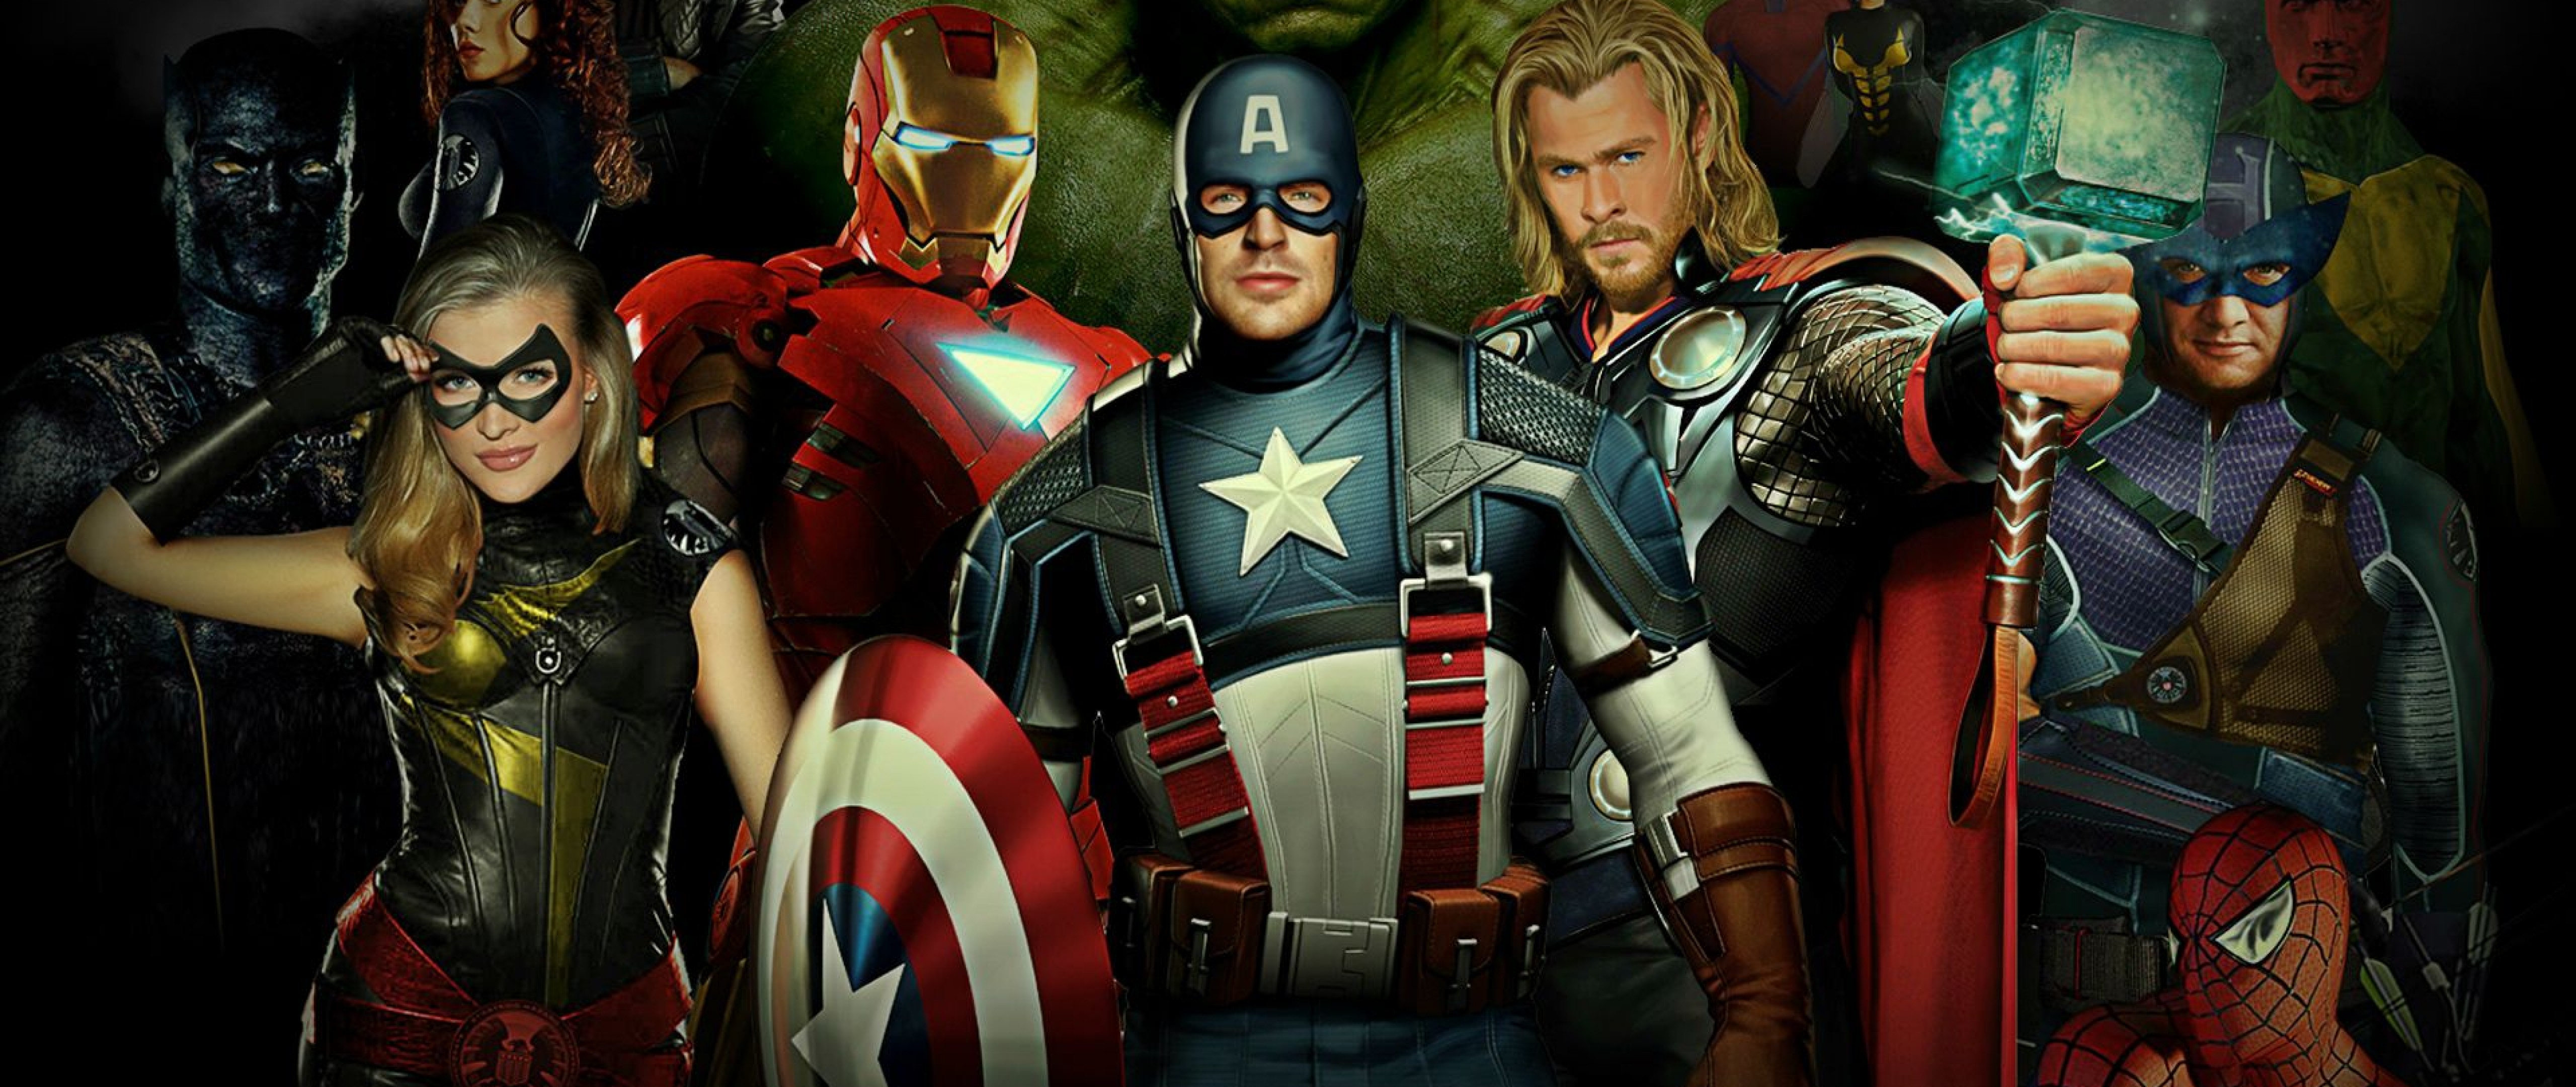 Avengers 2 Full Hd Wallpaper for Desktop and Mobiles 4K ...